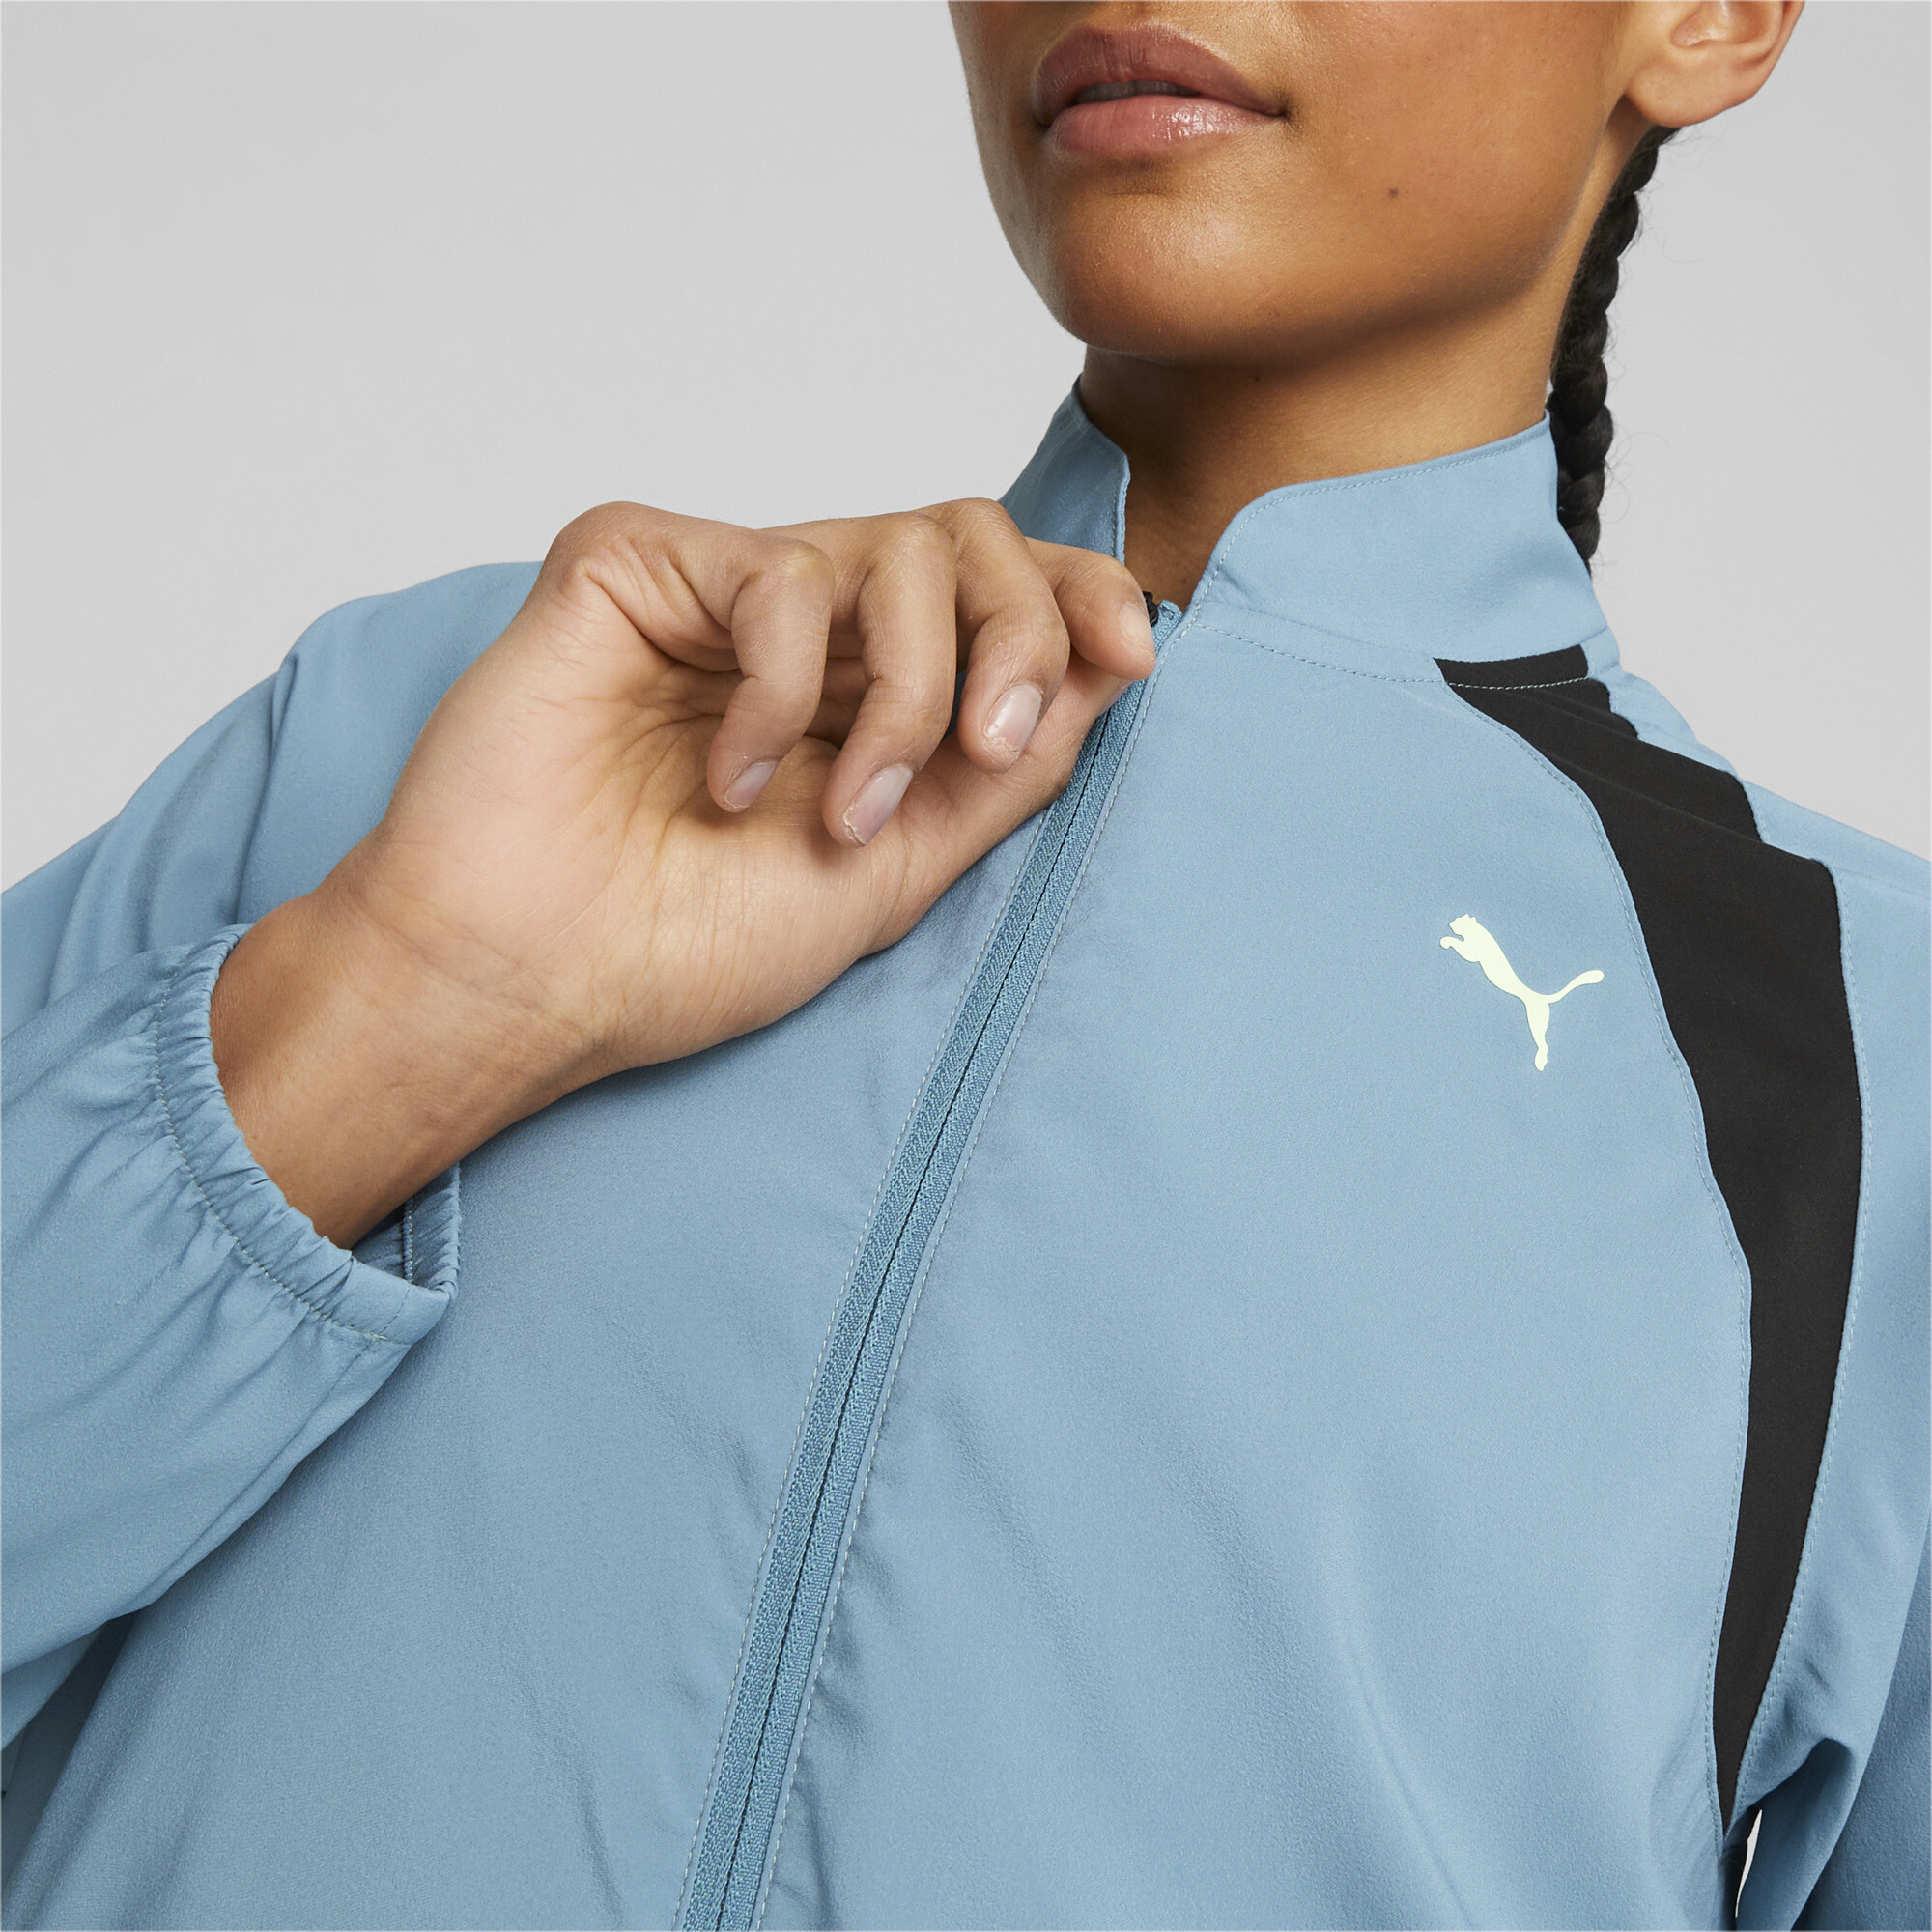 Women's PUMA Fit Training Jacket In Blue, Size XS